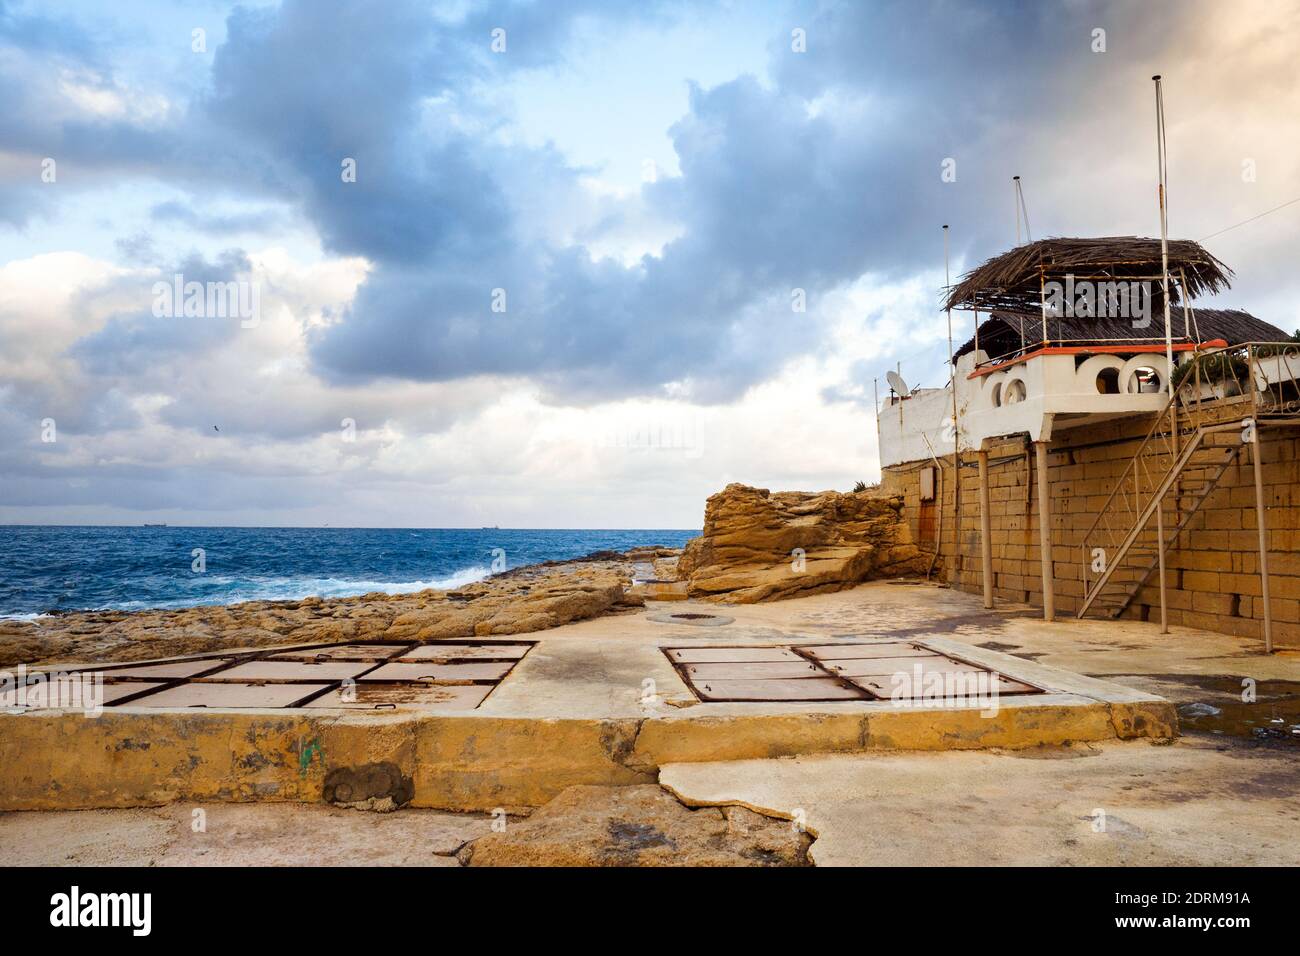 Coastal scene in Bugibba - Malta Stock Photo